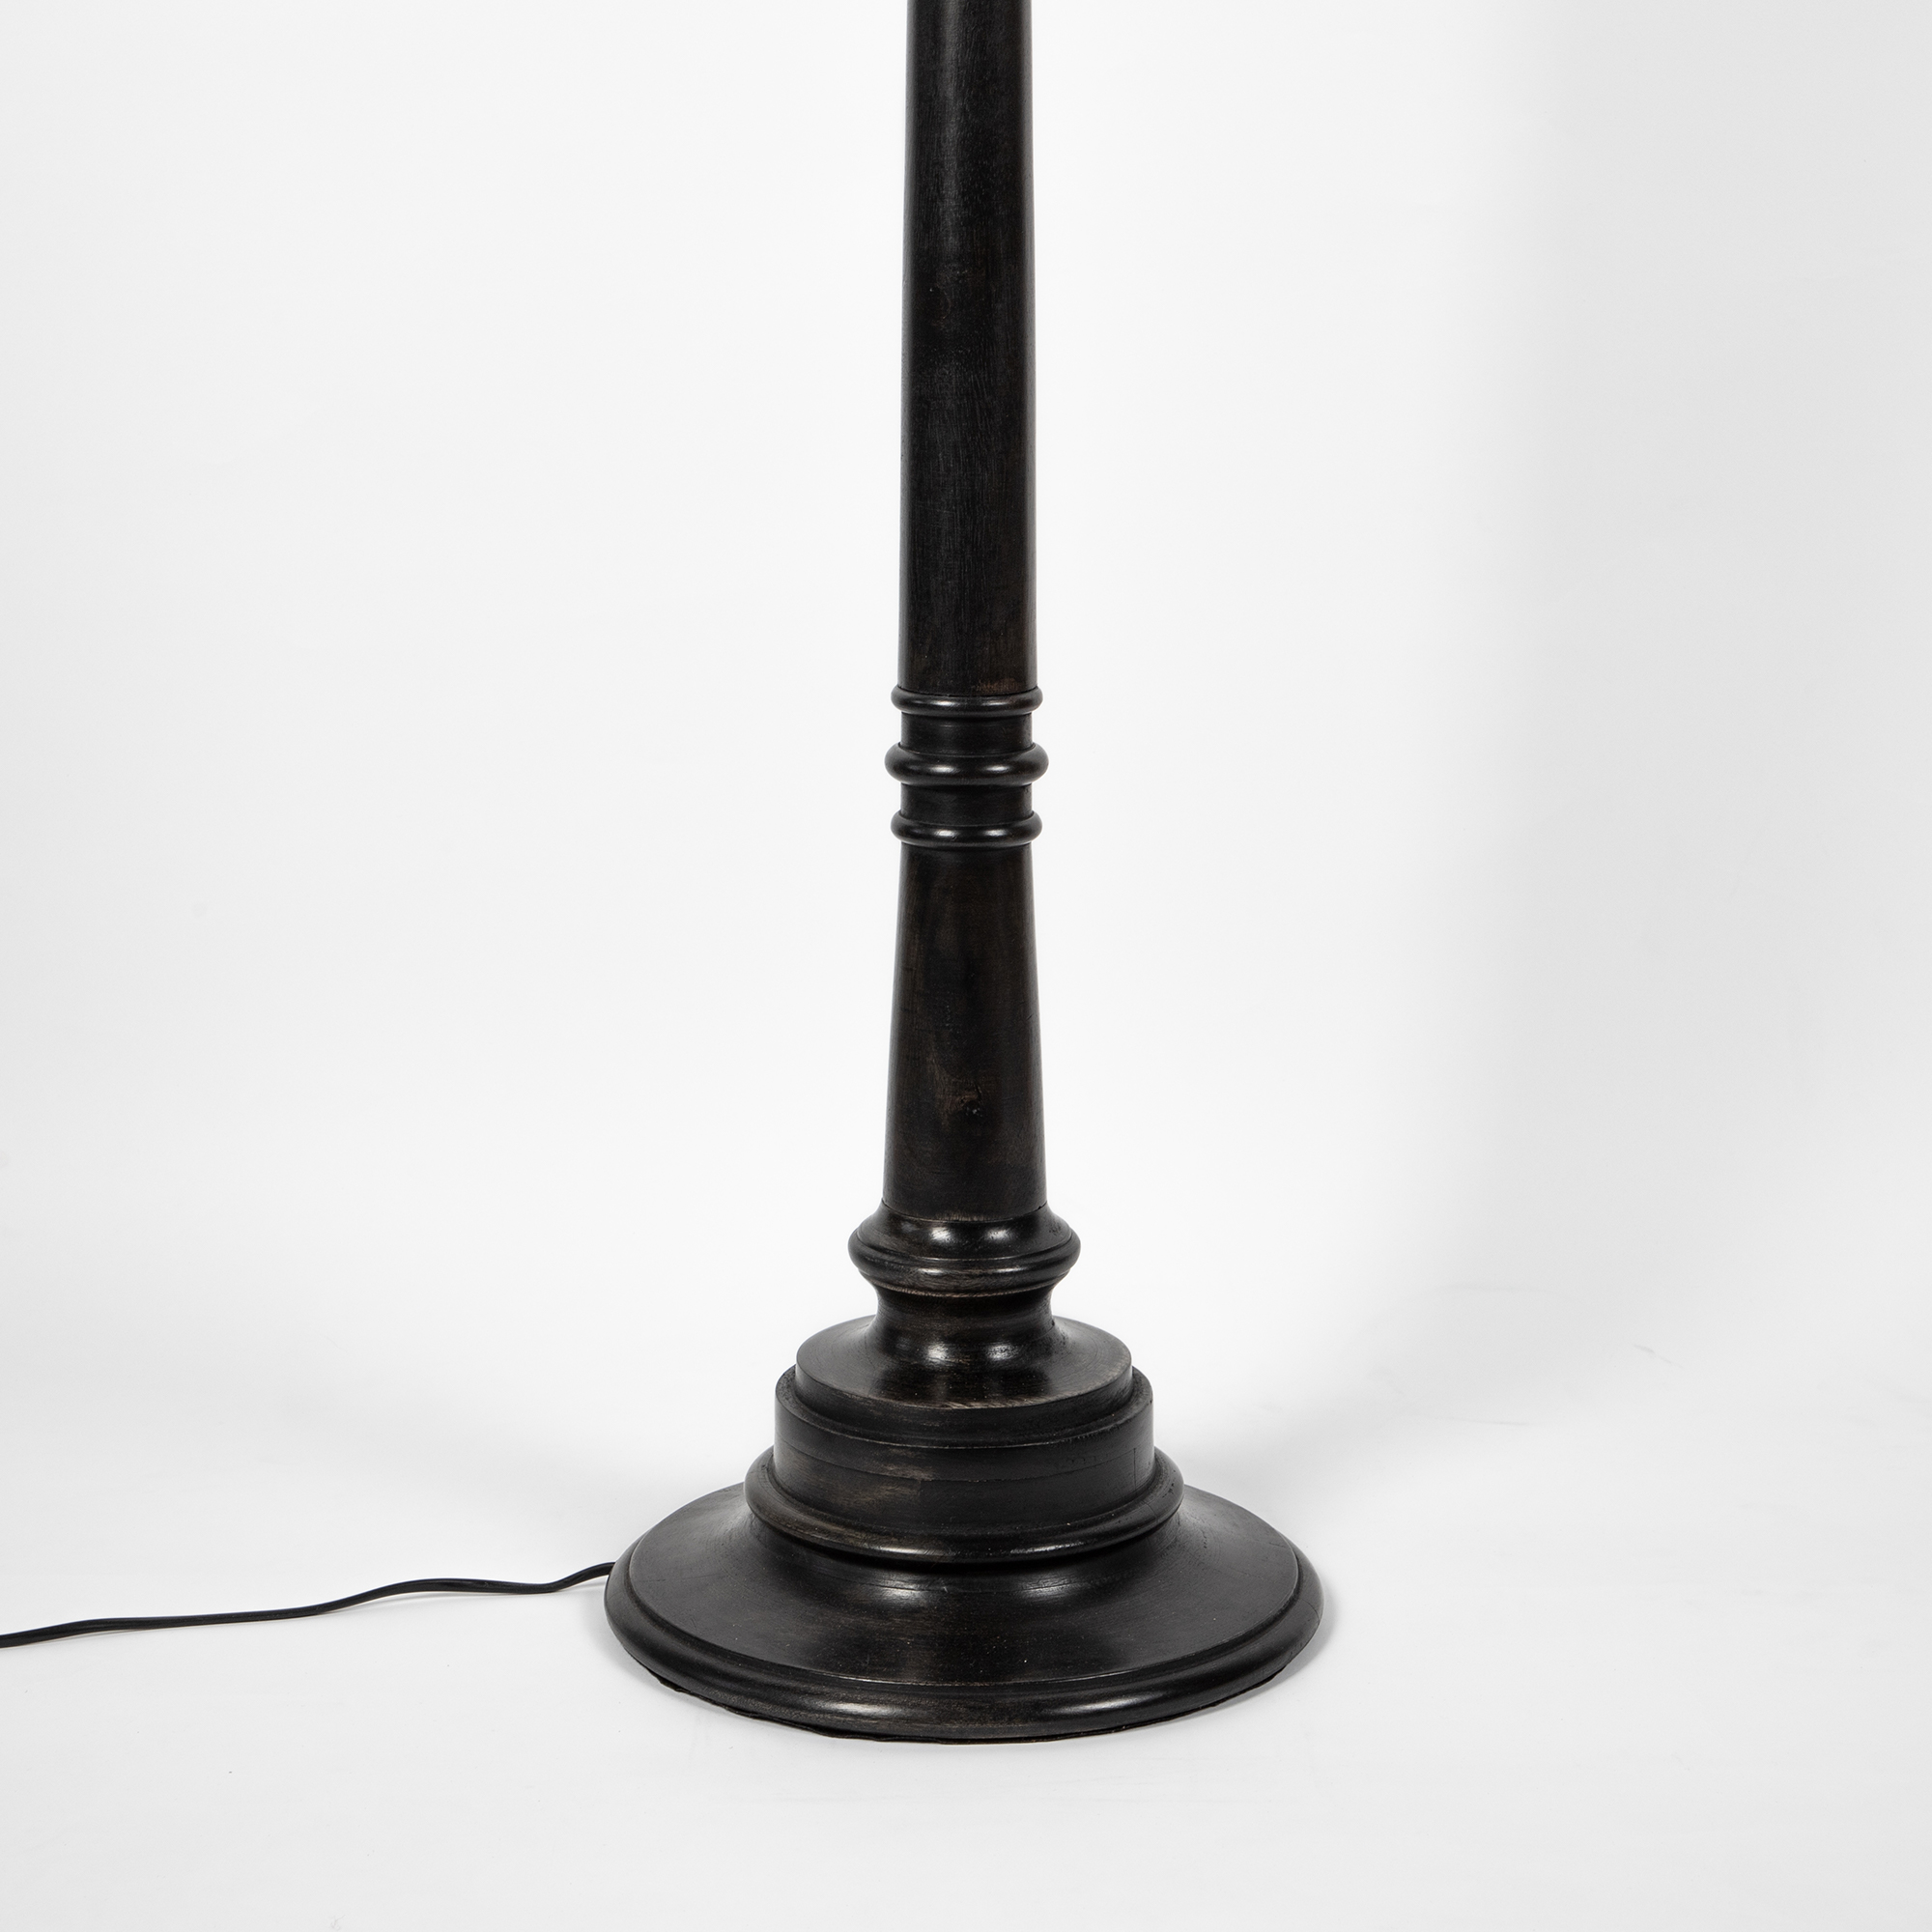 Denmark Wooden Floor Lamp